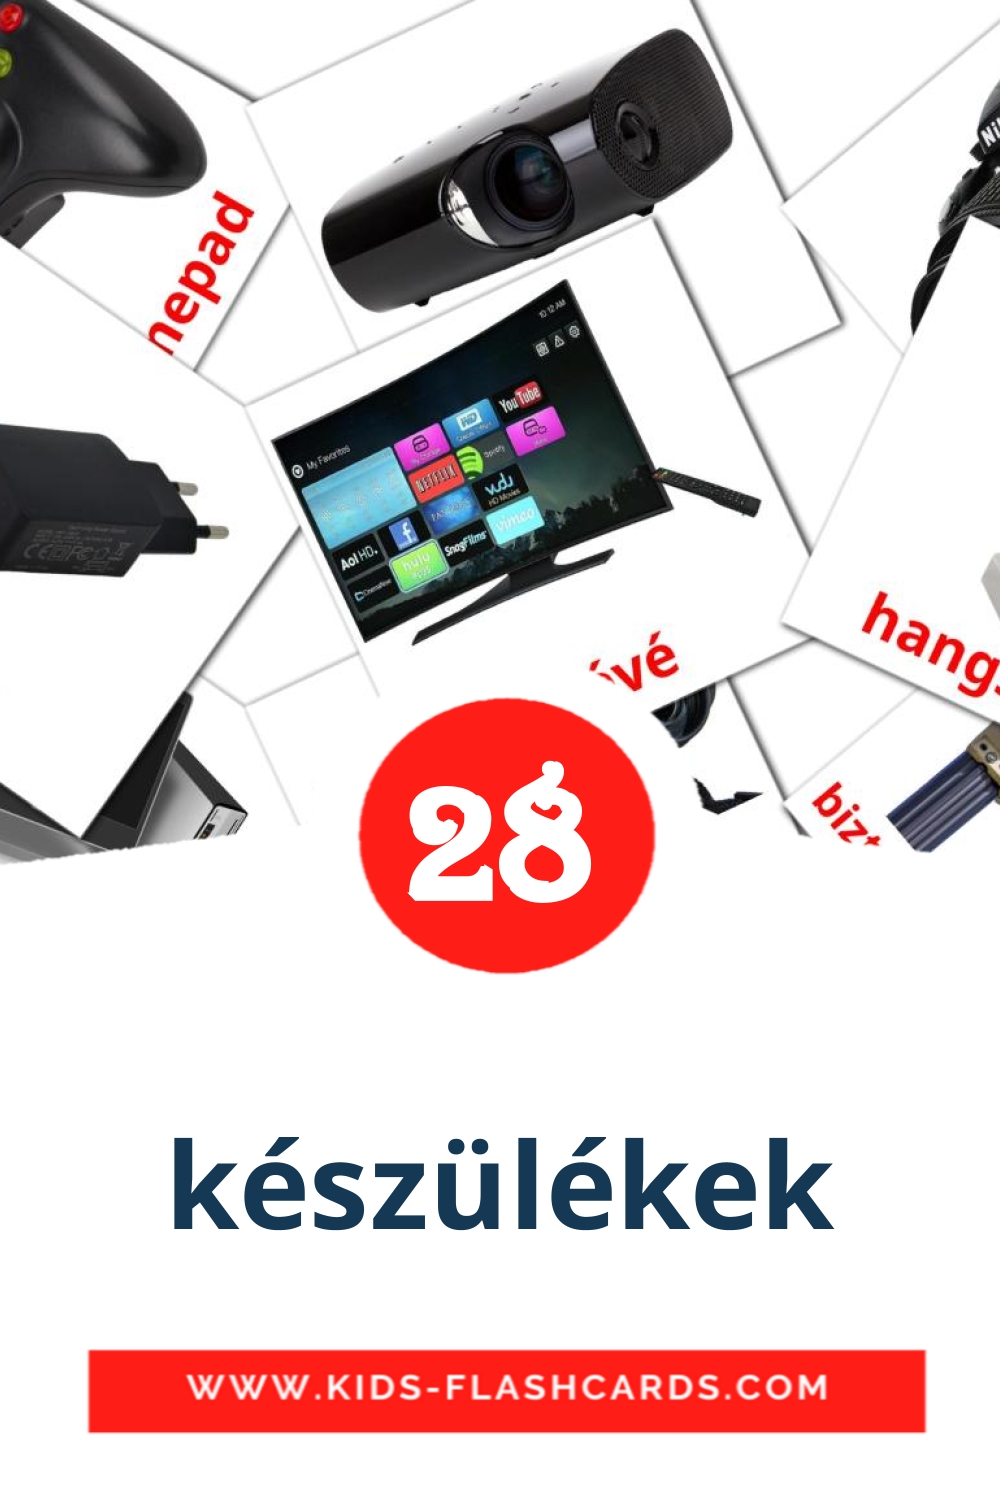 28 cartes illustrées de készülékek pour la maternelle en hongrois